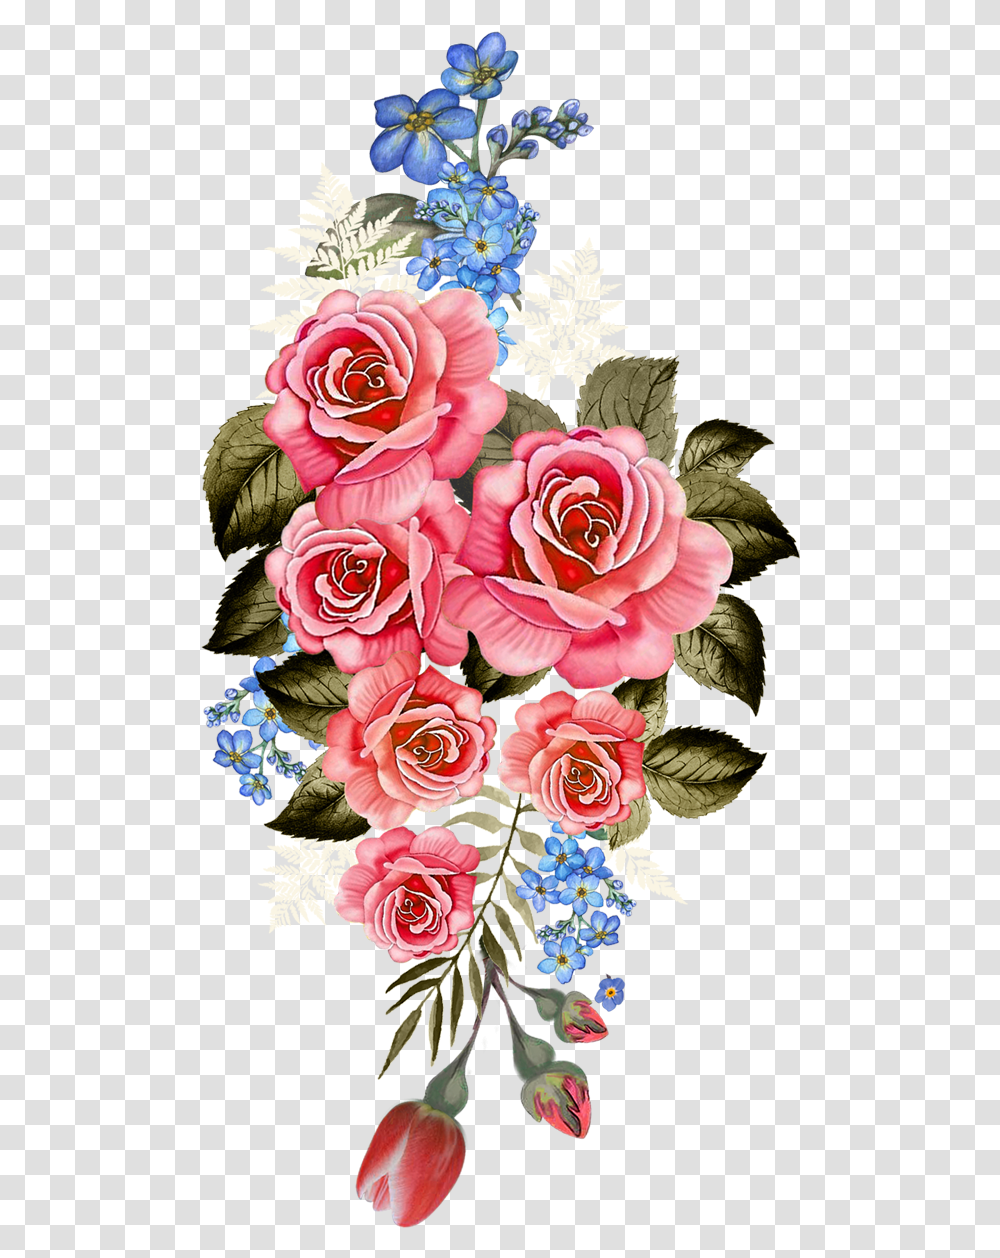 Flower Design Vectorflowervector Artflower Vector Flower Digital Textile Design, Plant, Floral Design, Pattern, Graphics Transparent Png